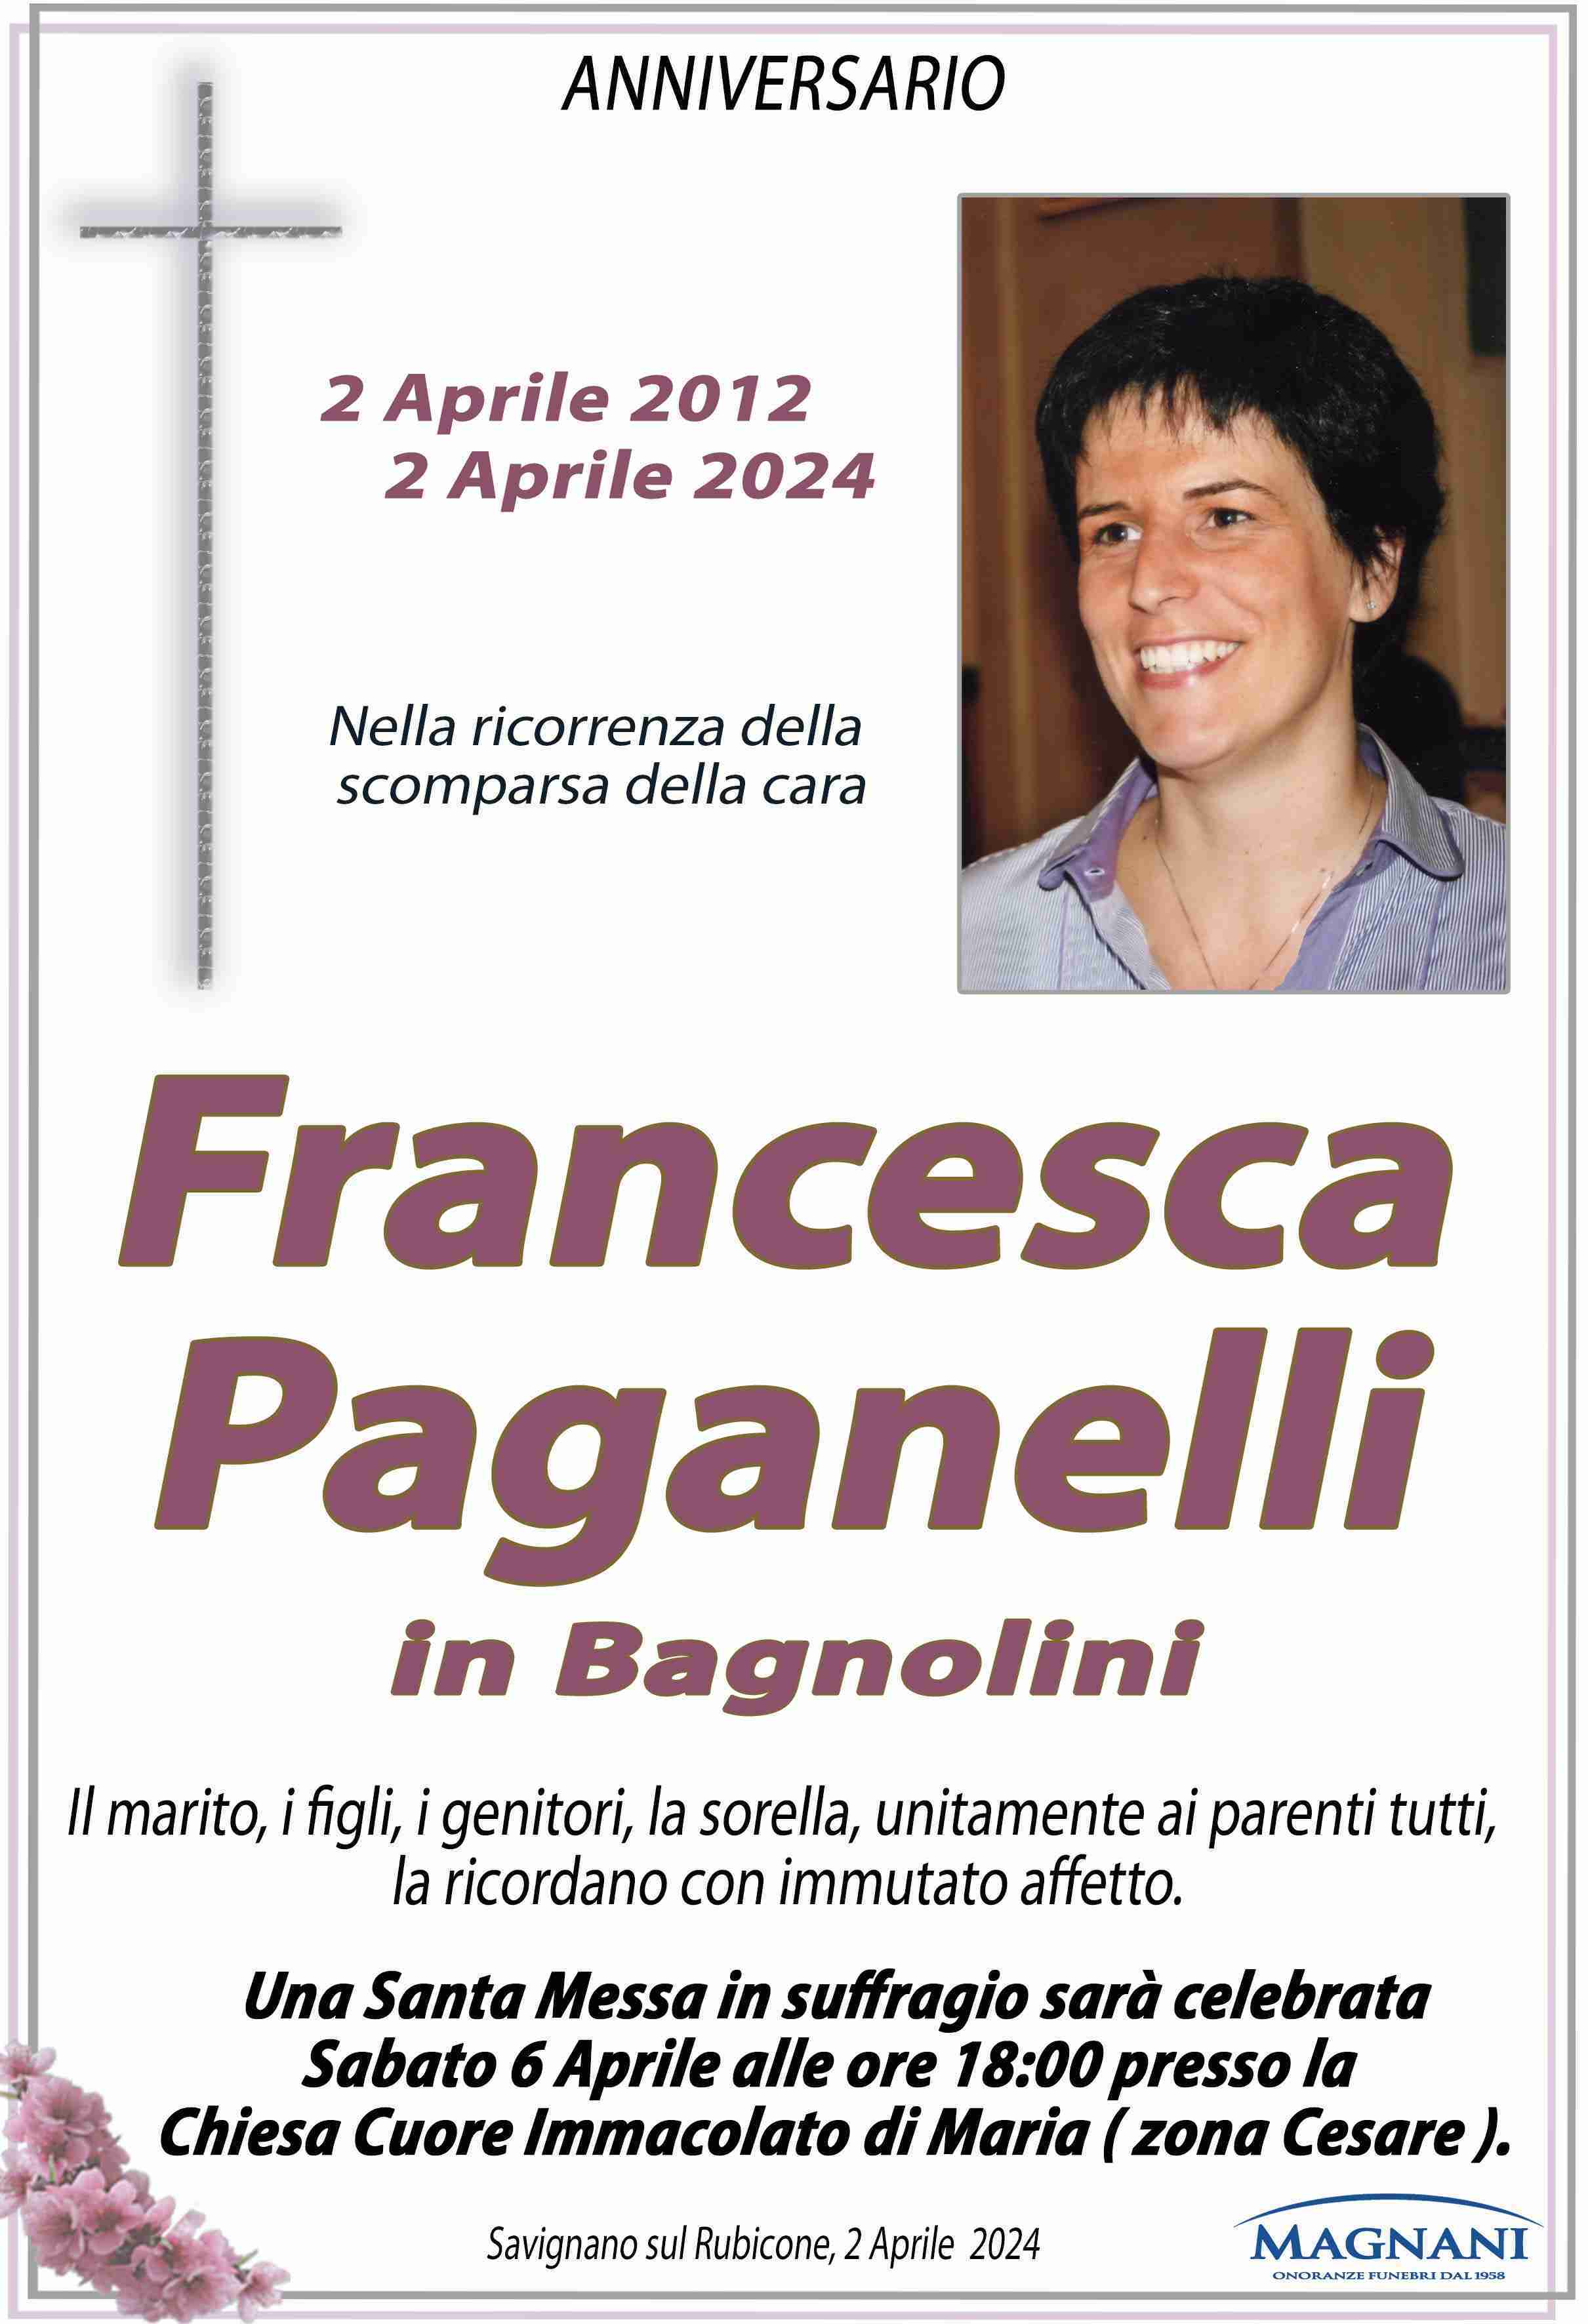 Francesca Paganelli